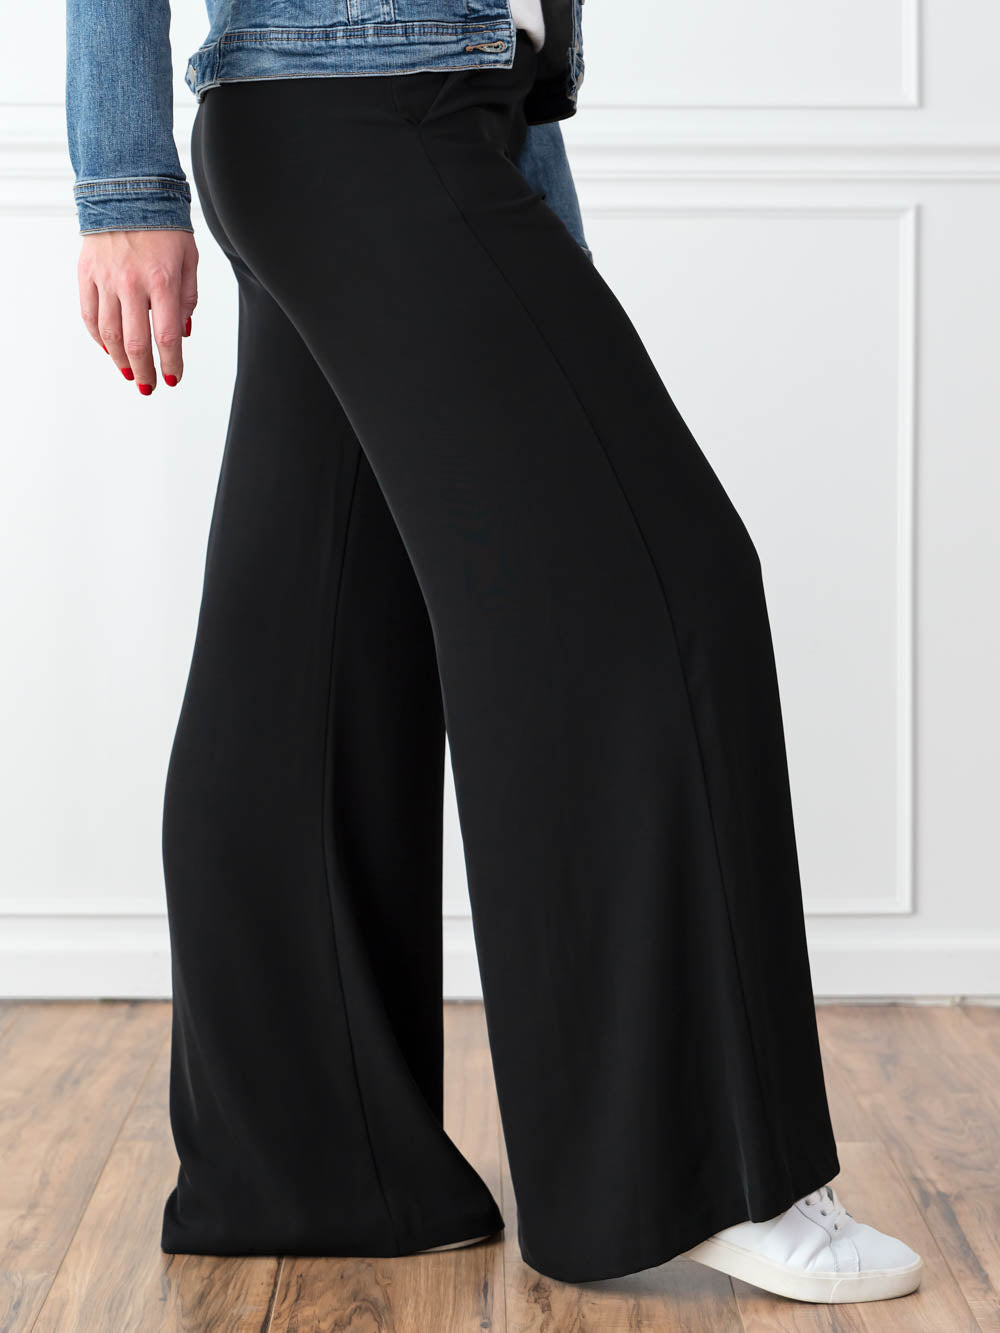 Riveria Tall Wide Leg Pant in Black 34 36 Inseams - Amalli Talli